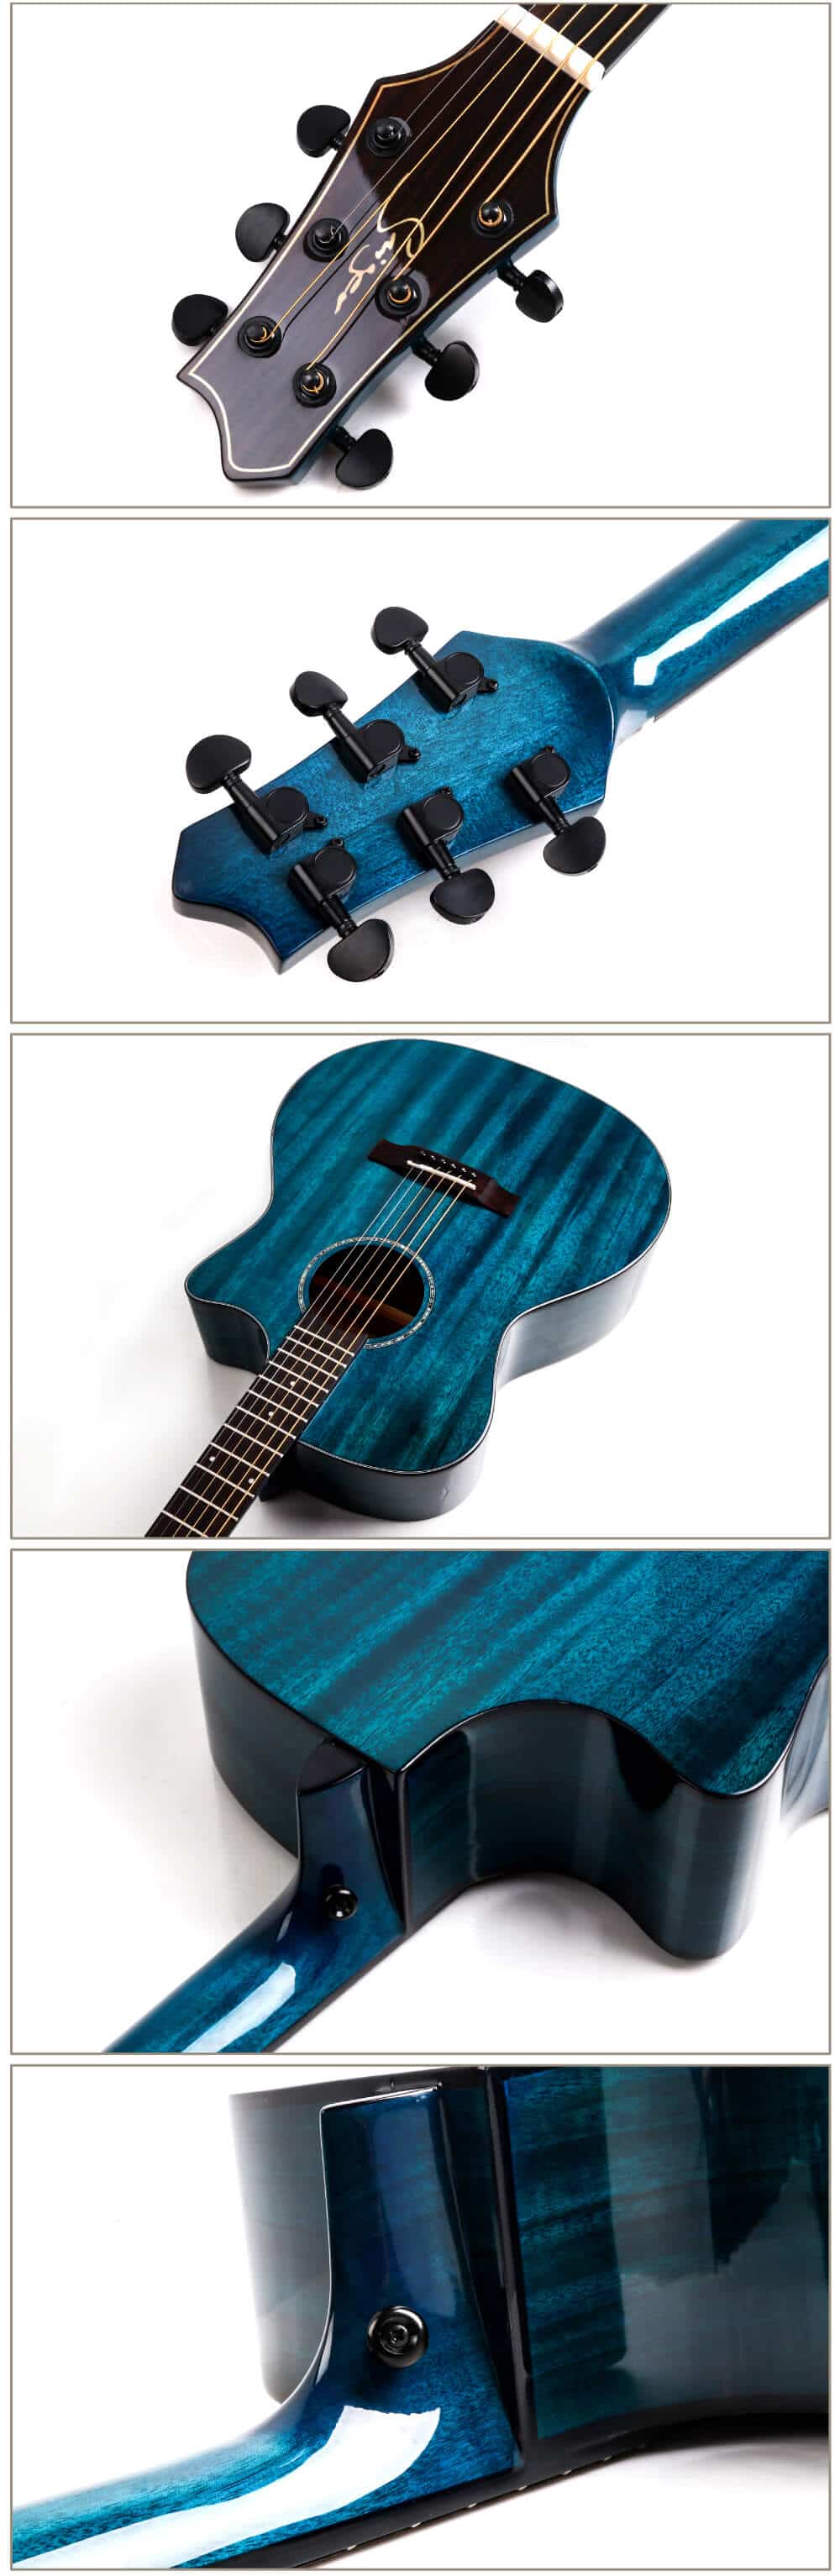 גיטרה אקוסטית סוליד טופ מוגברת Smiger- M-D10S-BL-גשר מפתחות כיוון וצוואר של הגיטרה